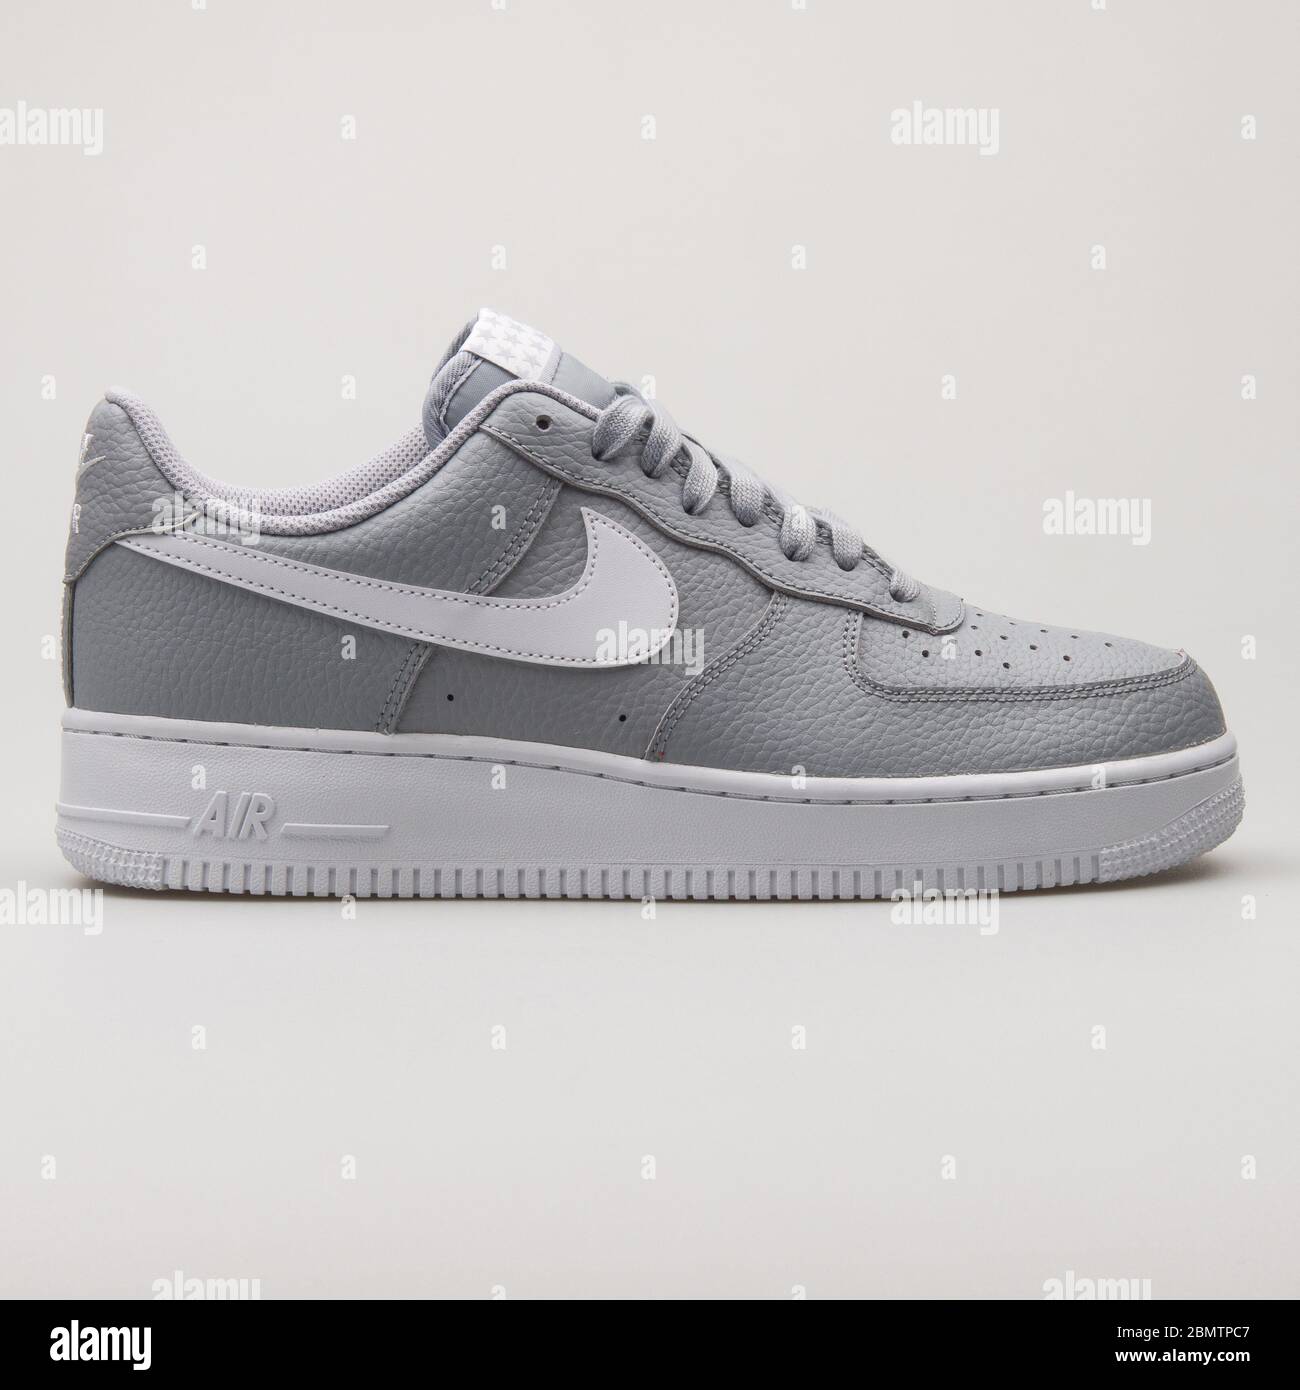 VIENNE, AUTRICHE - 19 FÉVRIER 2018 : sneaker Nike Air Force 1 07 gris et  blanc sur fond blanc Photo Stock - Alamy